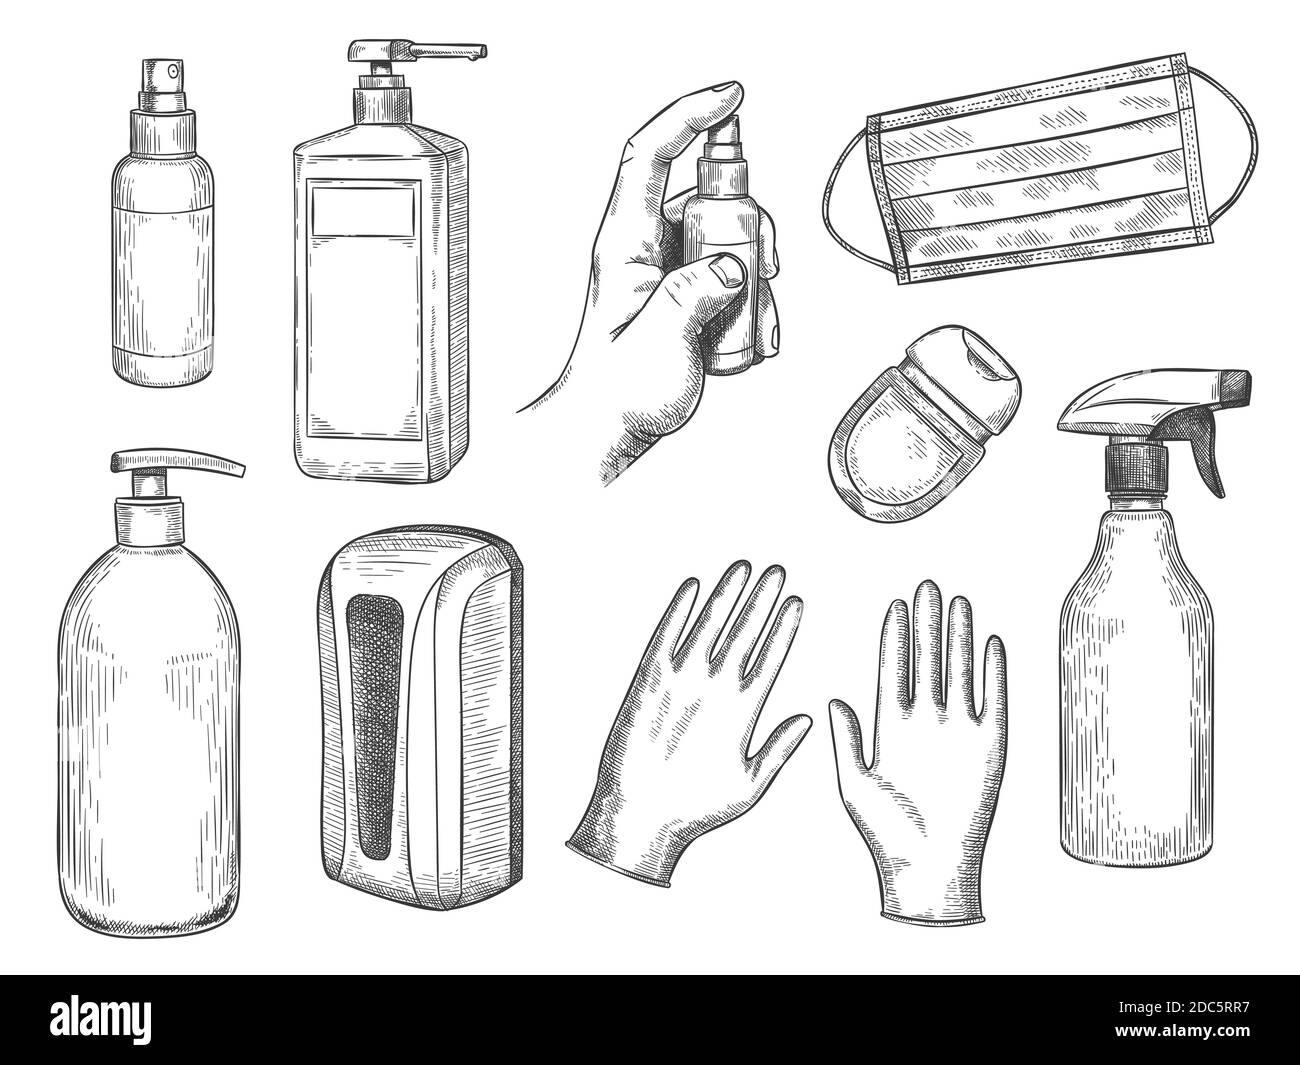 Dessinez le flacon de désinfectant. Équipement de protection individuelle. Masque médical, gants, savon liquide et spray antibactérien. Jeu de vecteurs PPE dessinés à la main Illustration de Vecteur